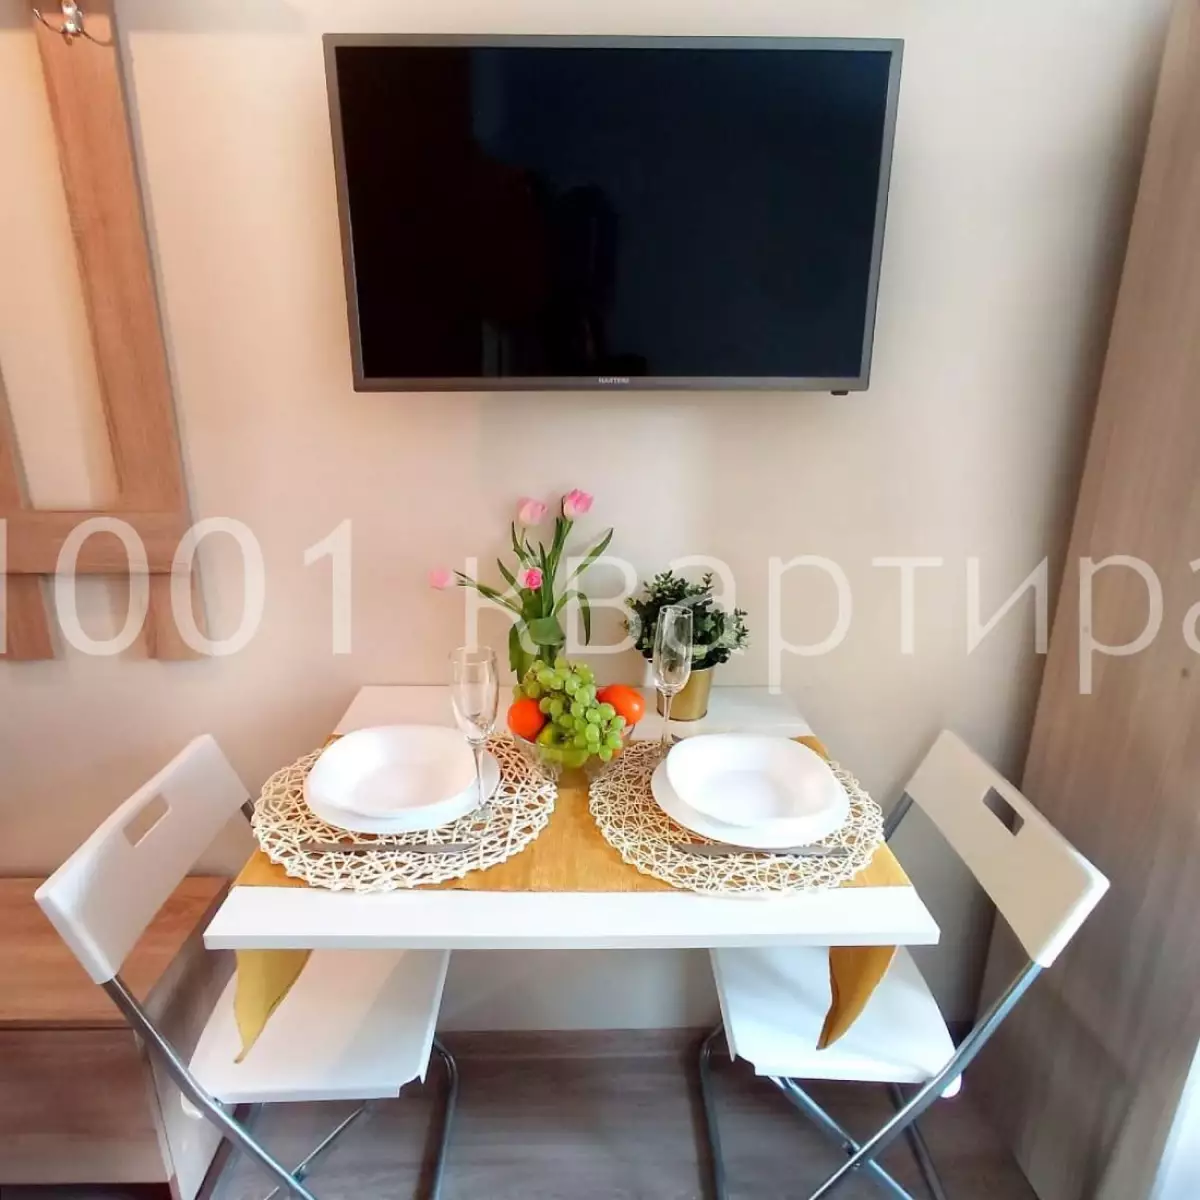 Вариант #134947 для аренды посуточно в Москве Дегунинская, д.1 к 3 на 2 гостей - фото 6